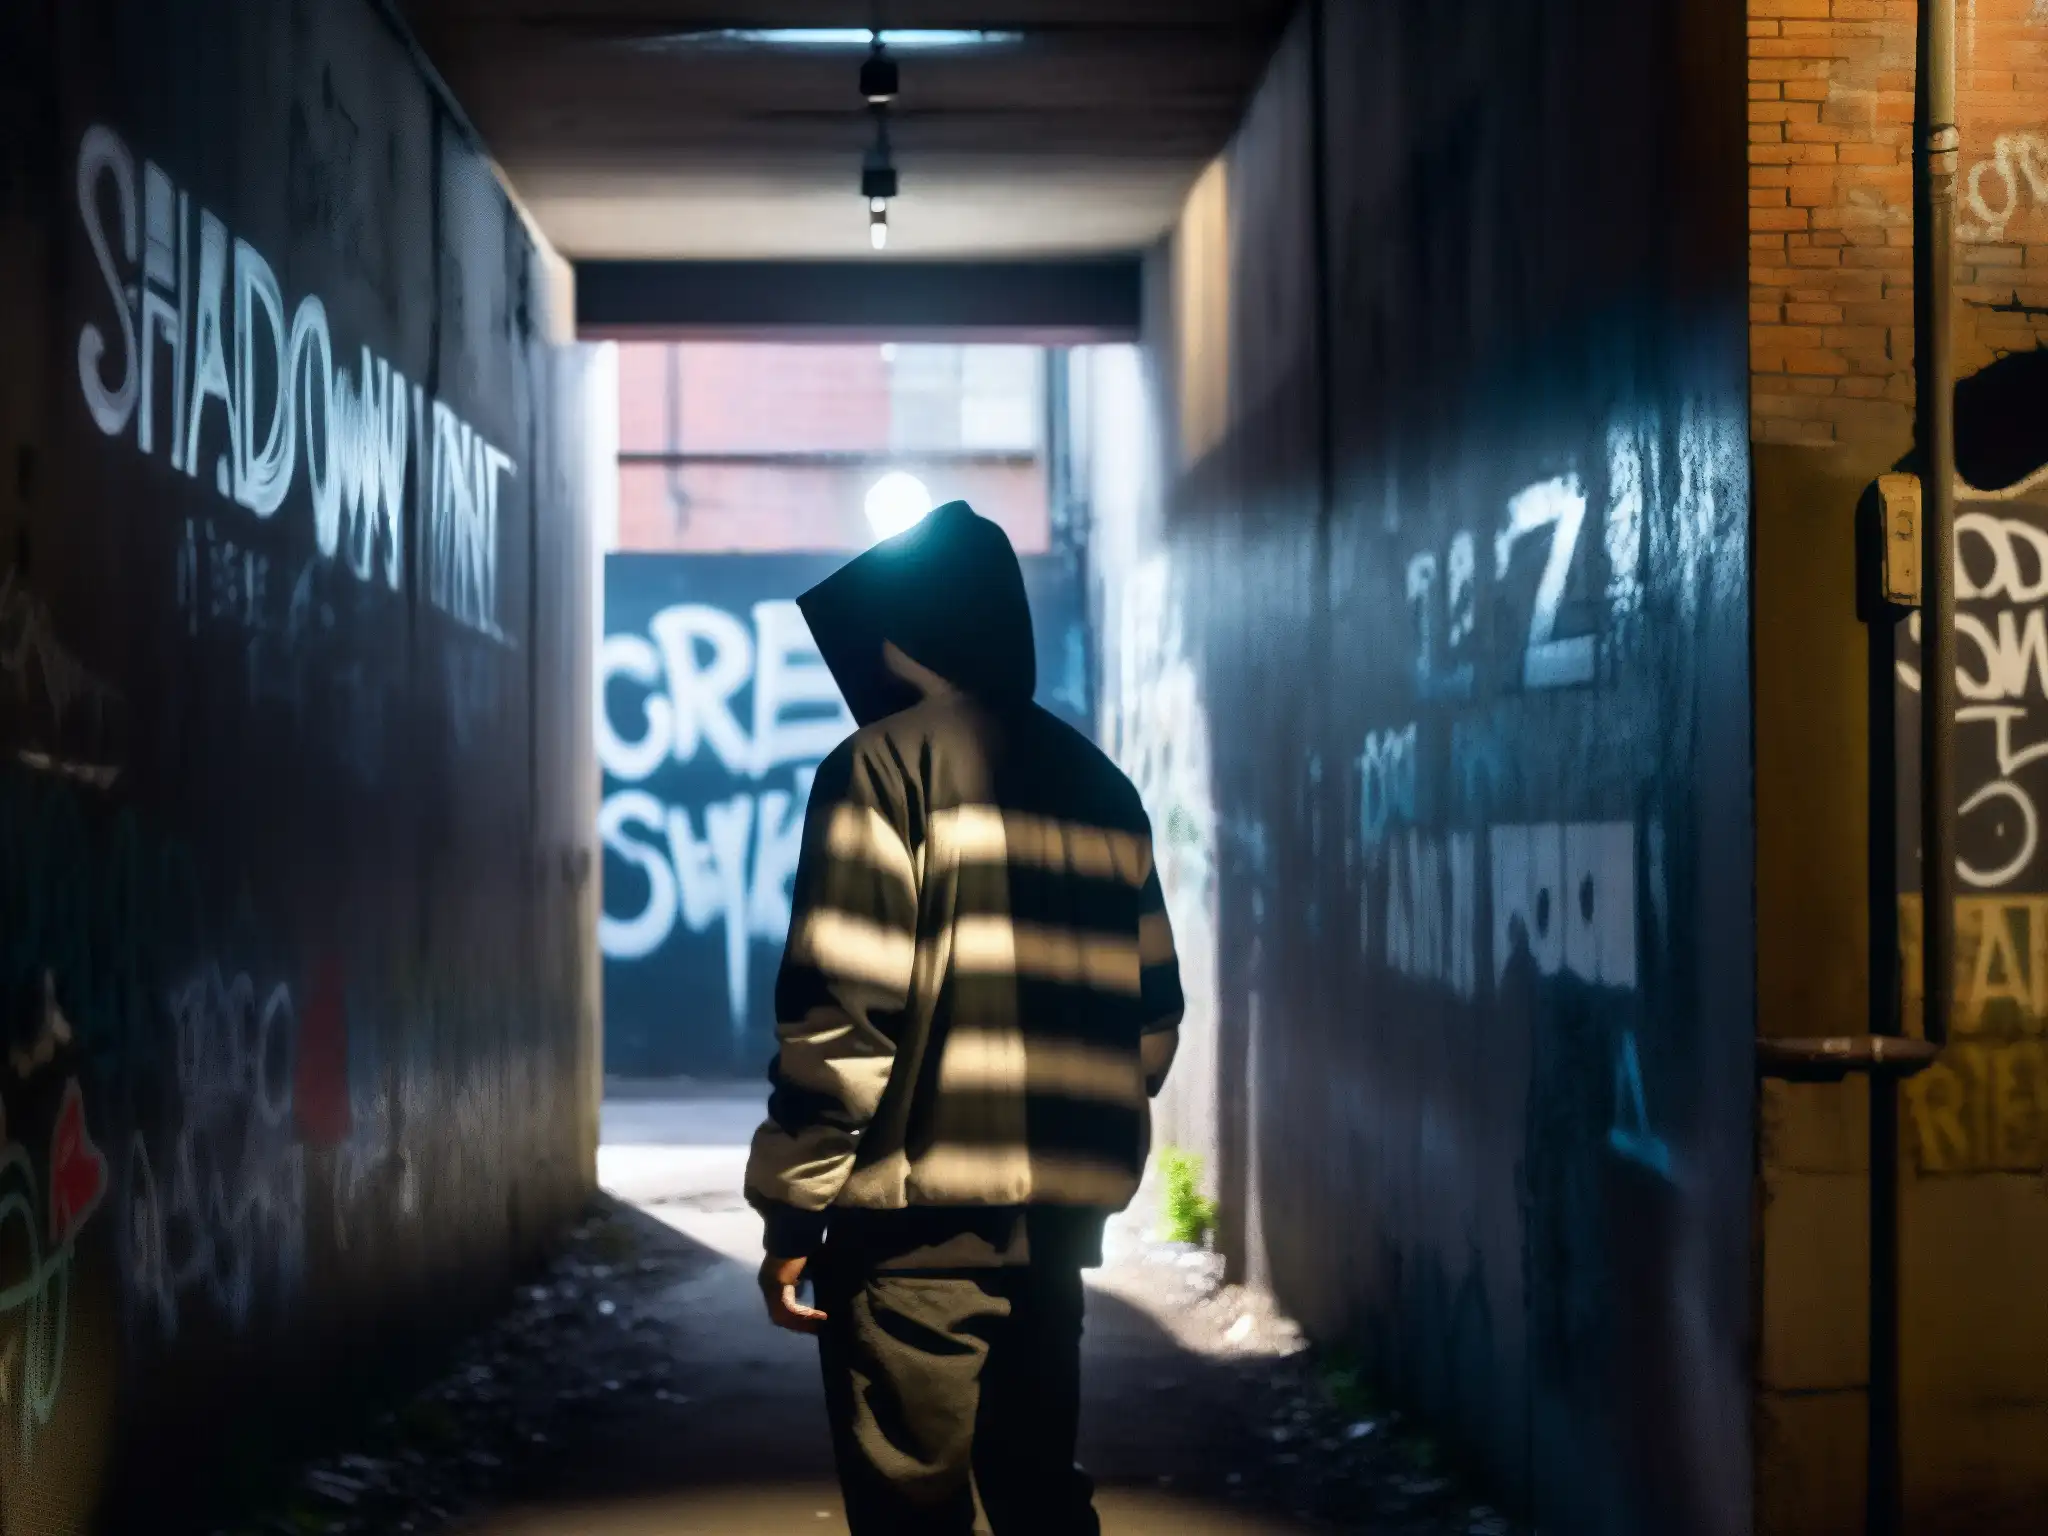 Figura misteriosa en callejón oscuro con grafitis